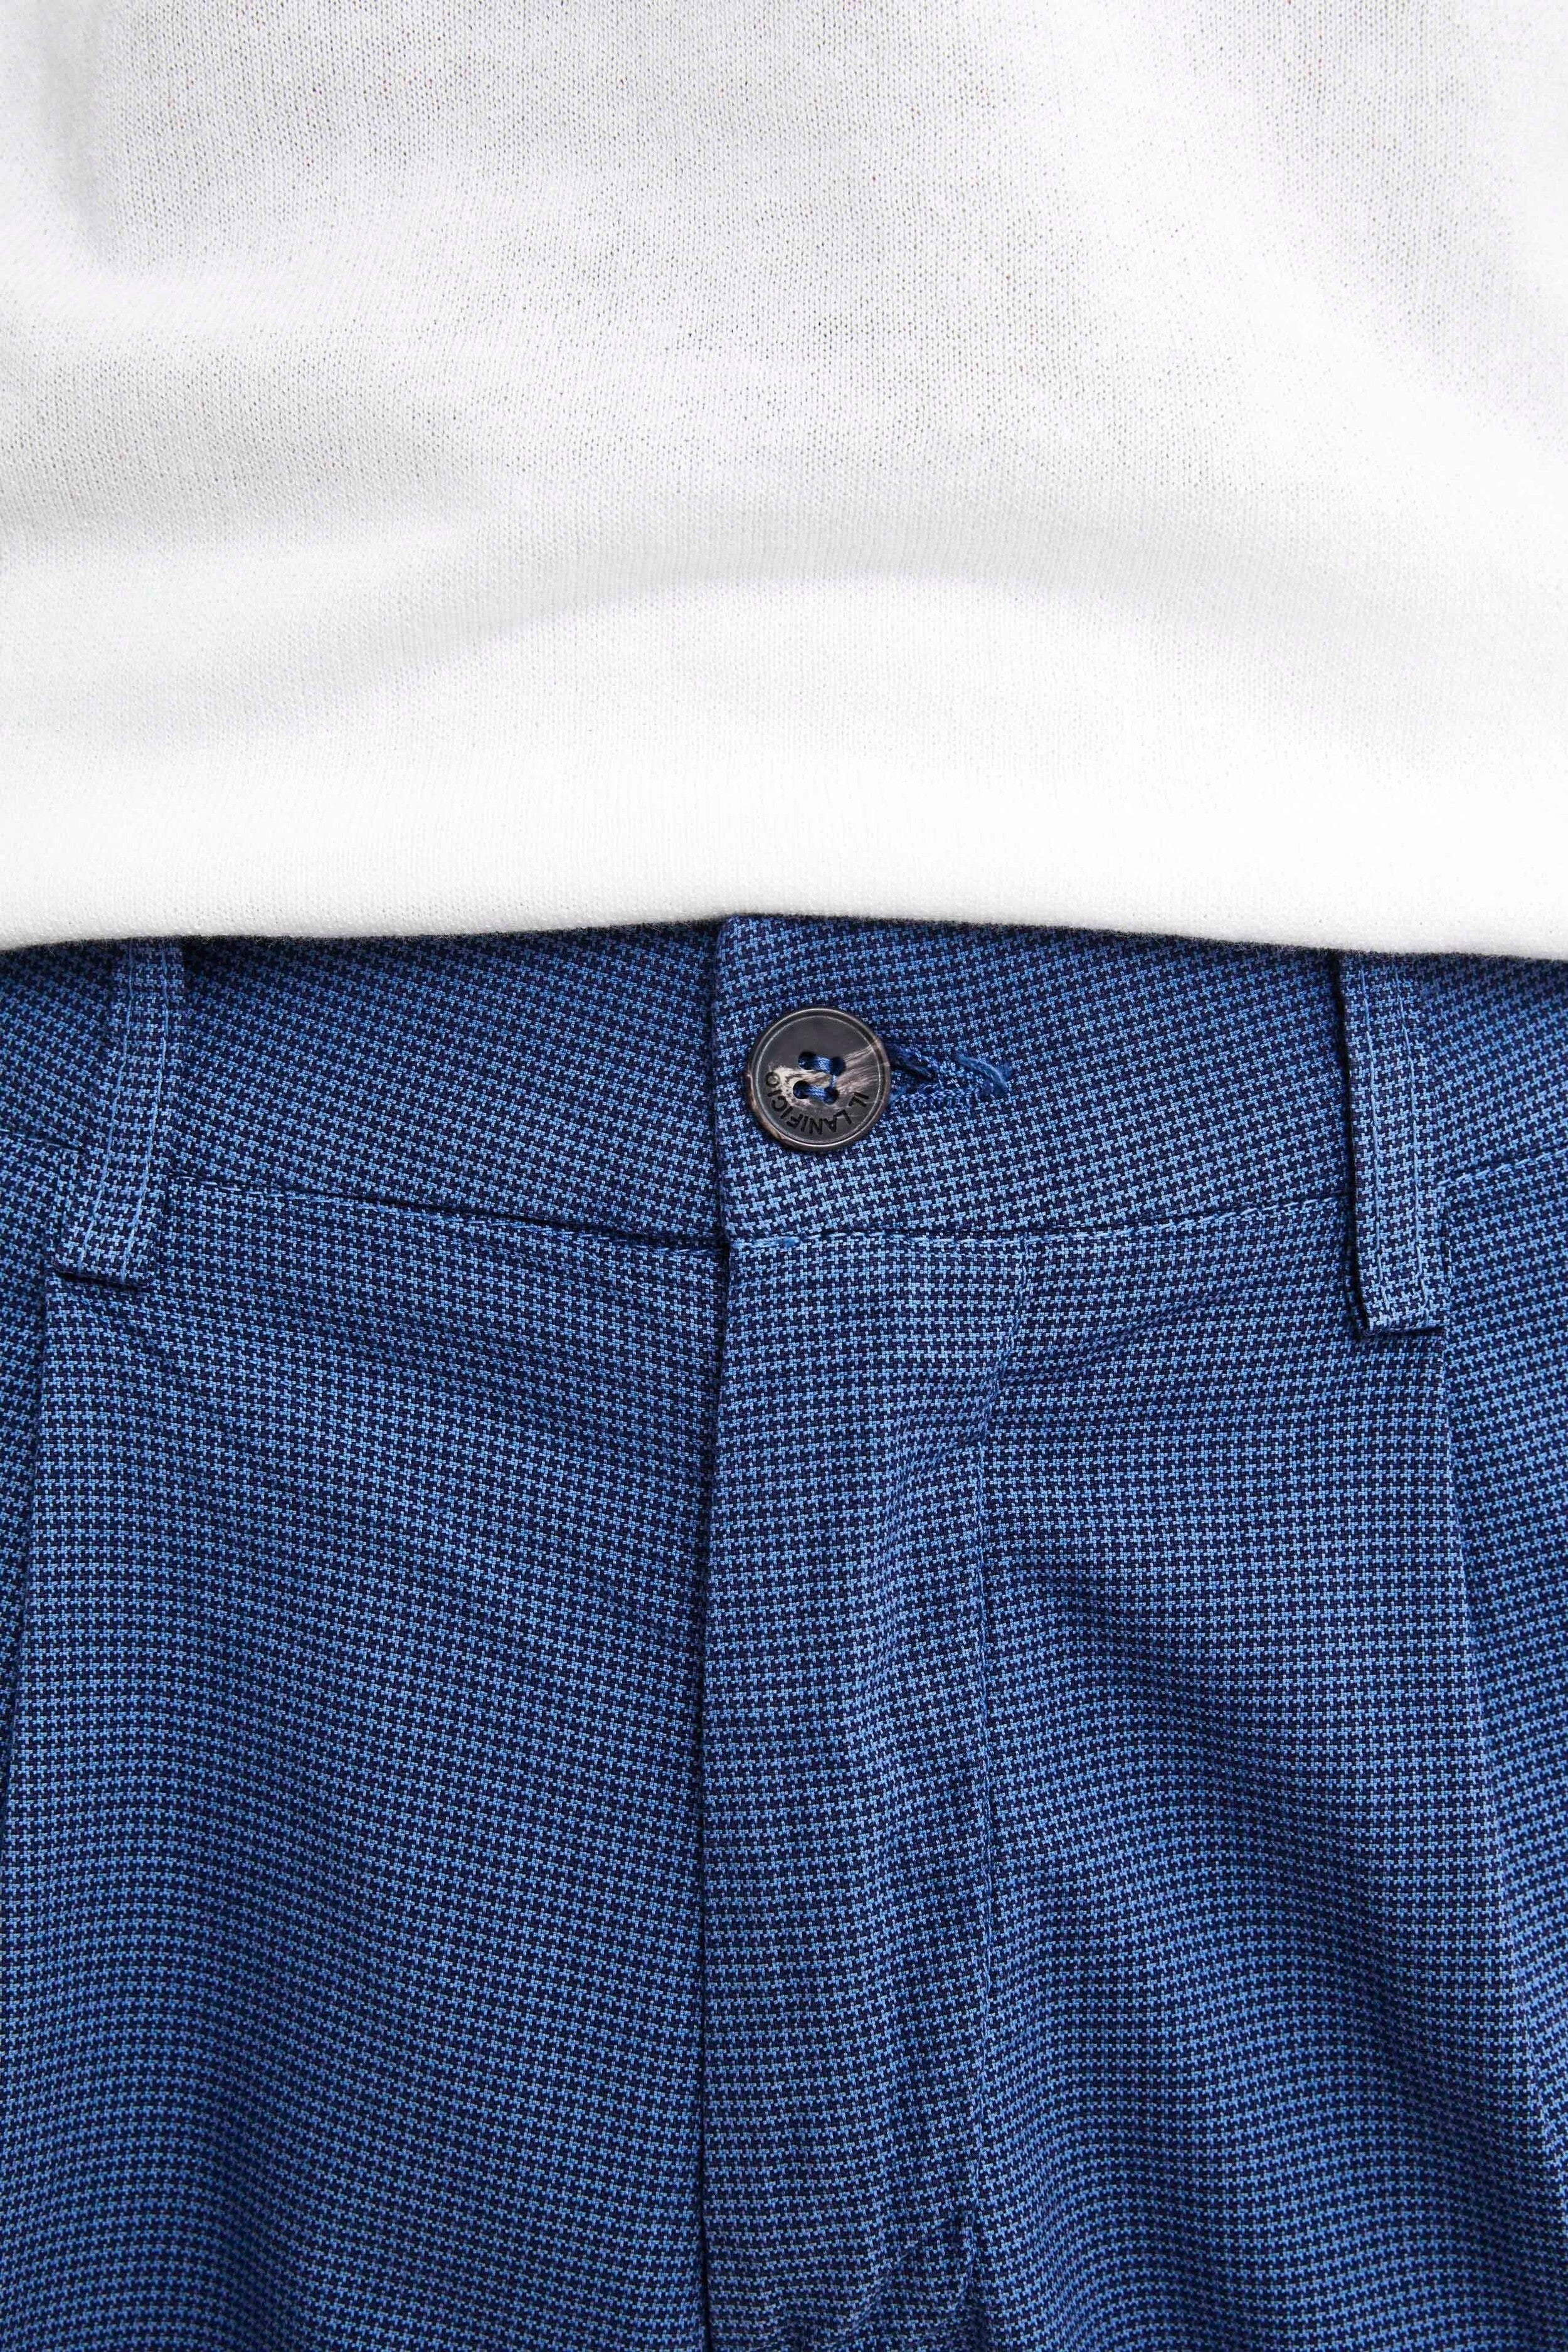 Cotton patterned pants - Medium blue